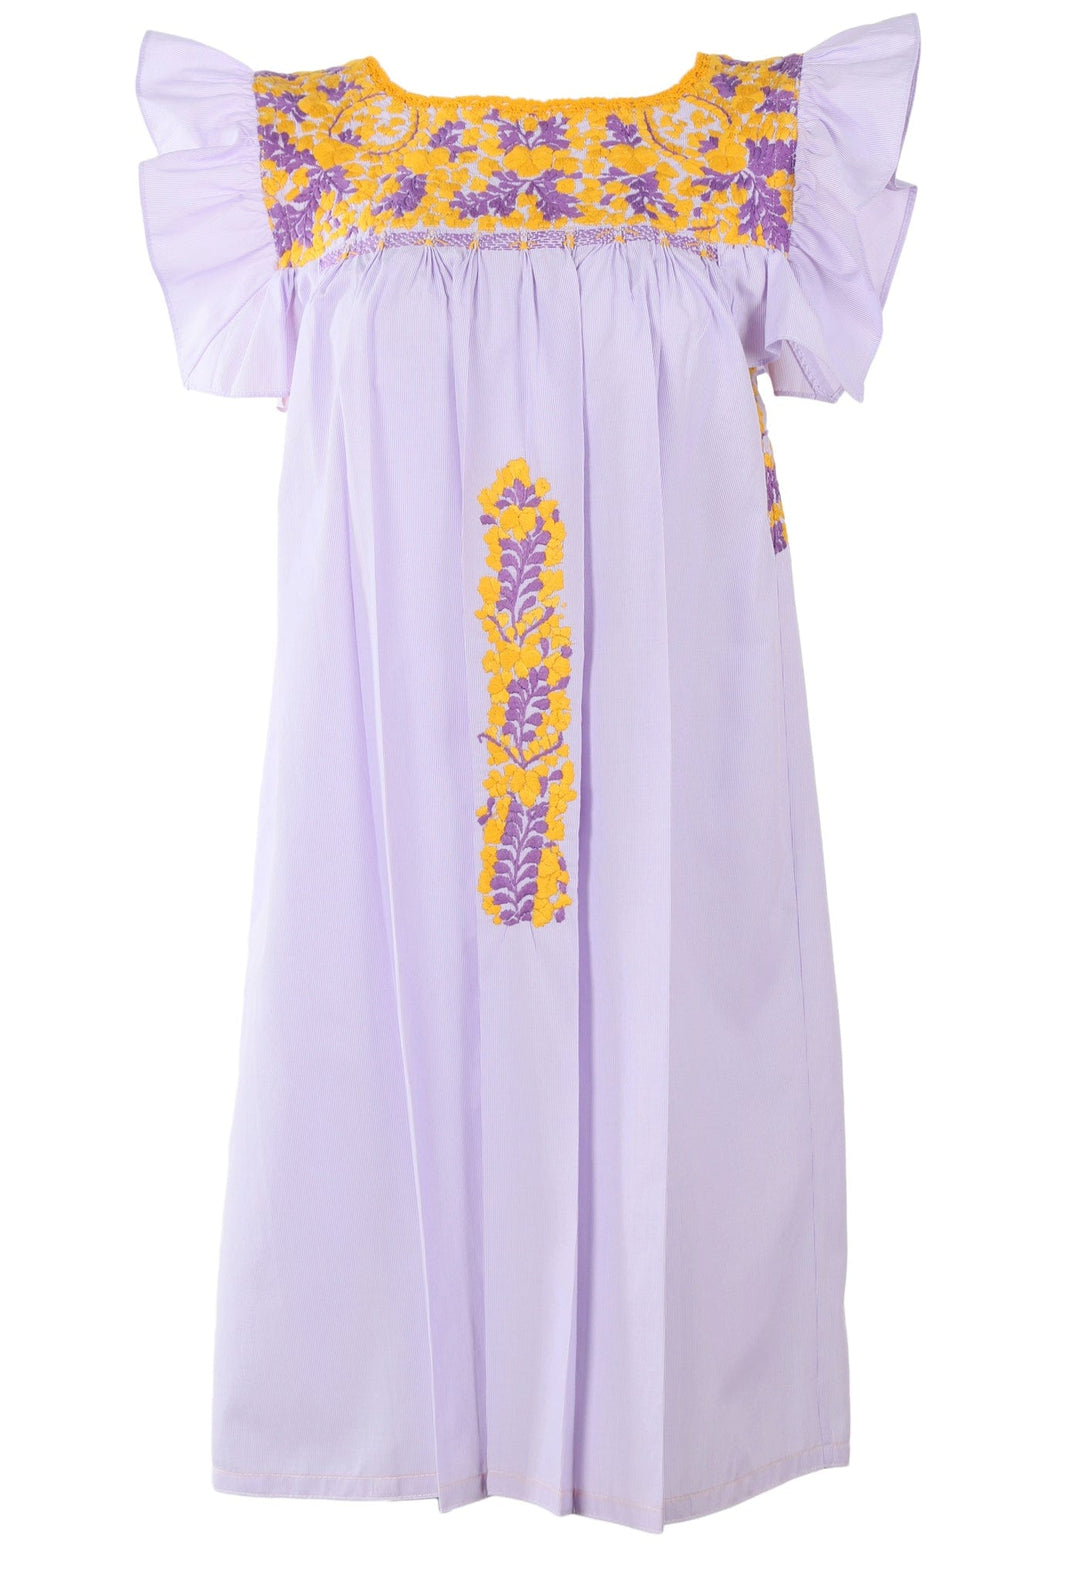 Soledad Short Dress Dress Soledad Prendo Amarillo y Purpura